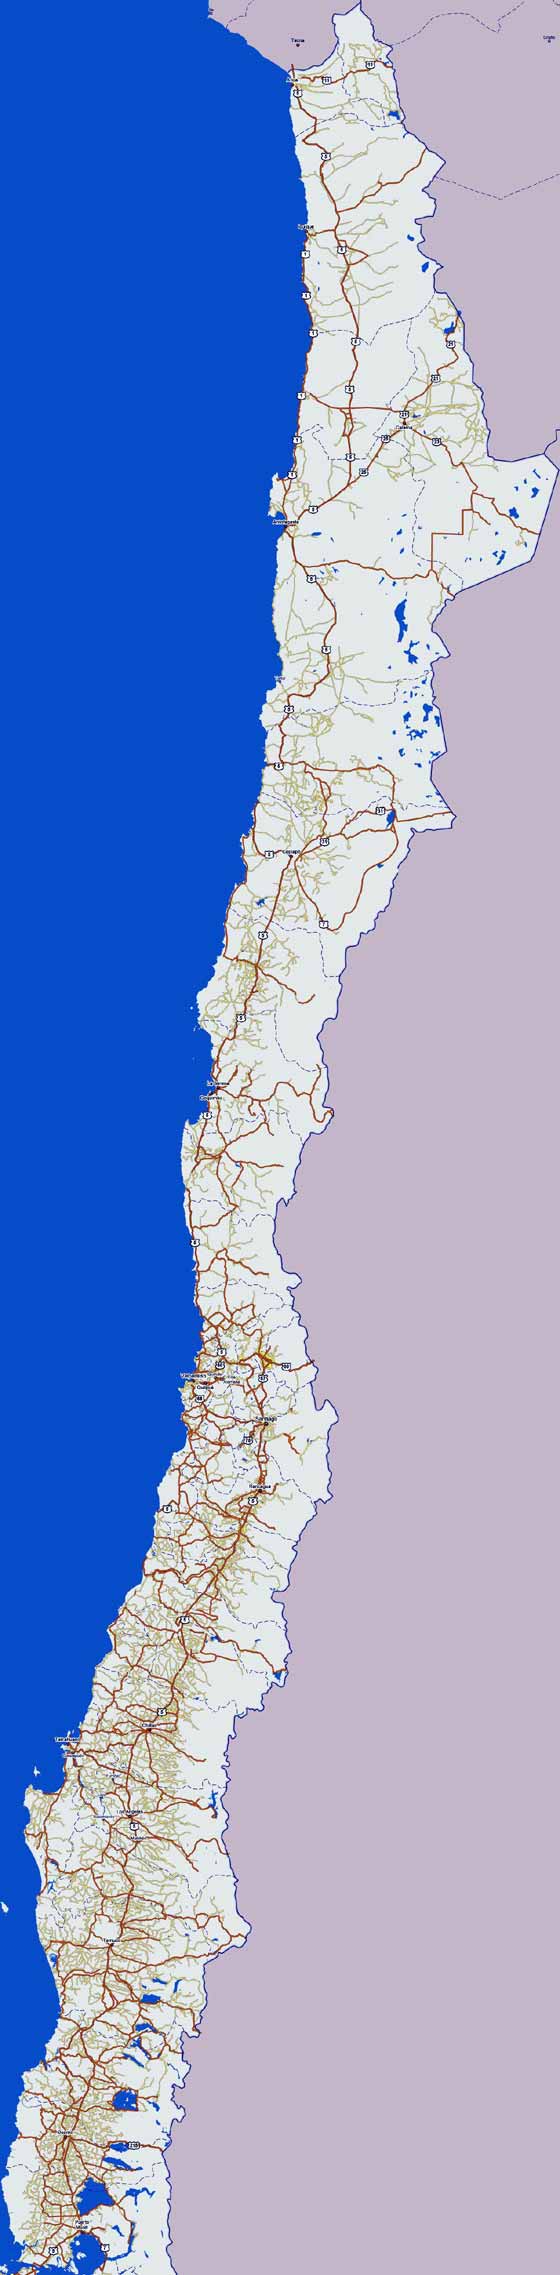 Детальная карта Чили